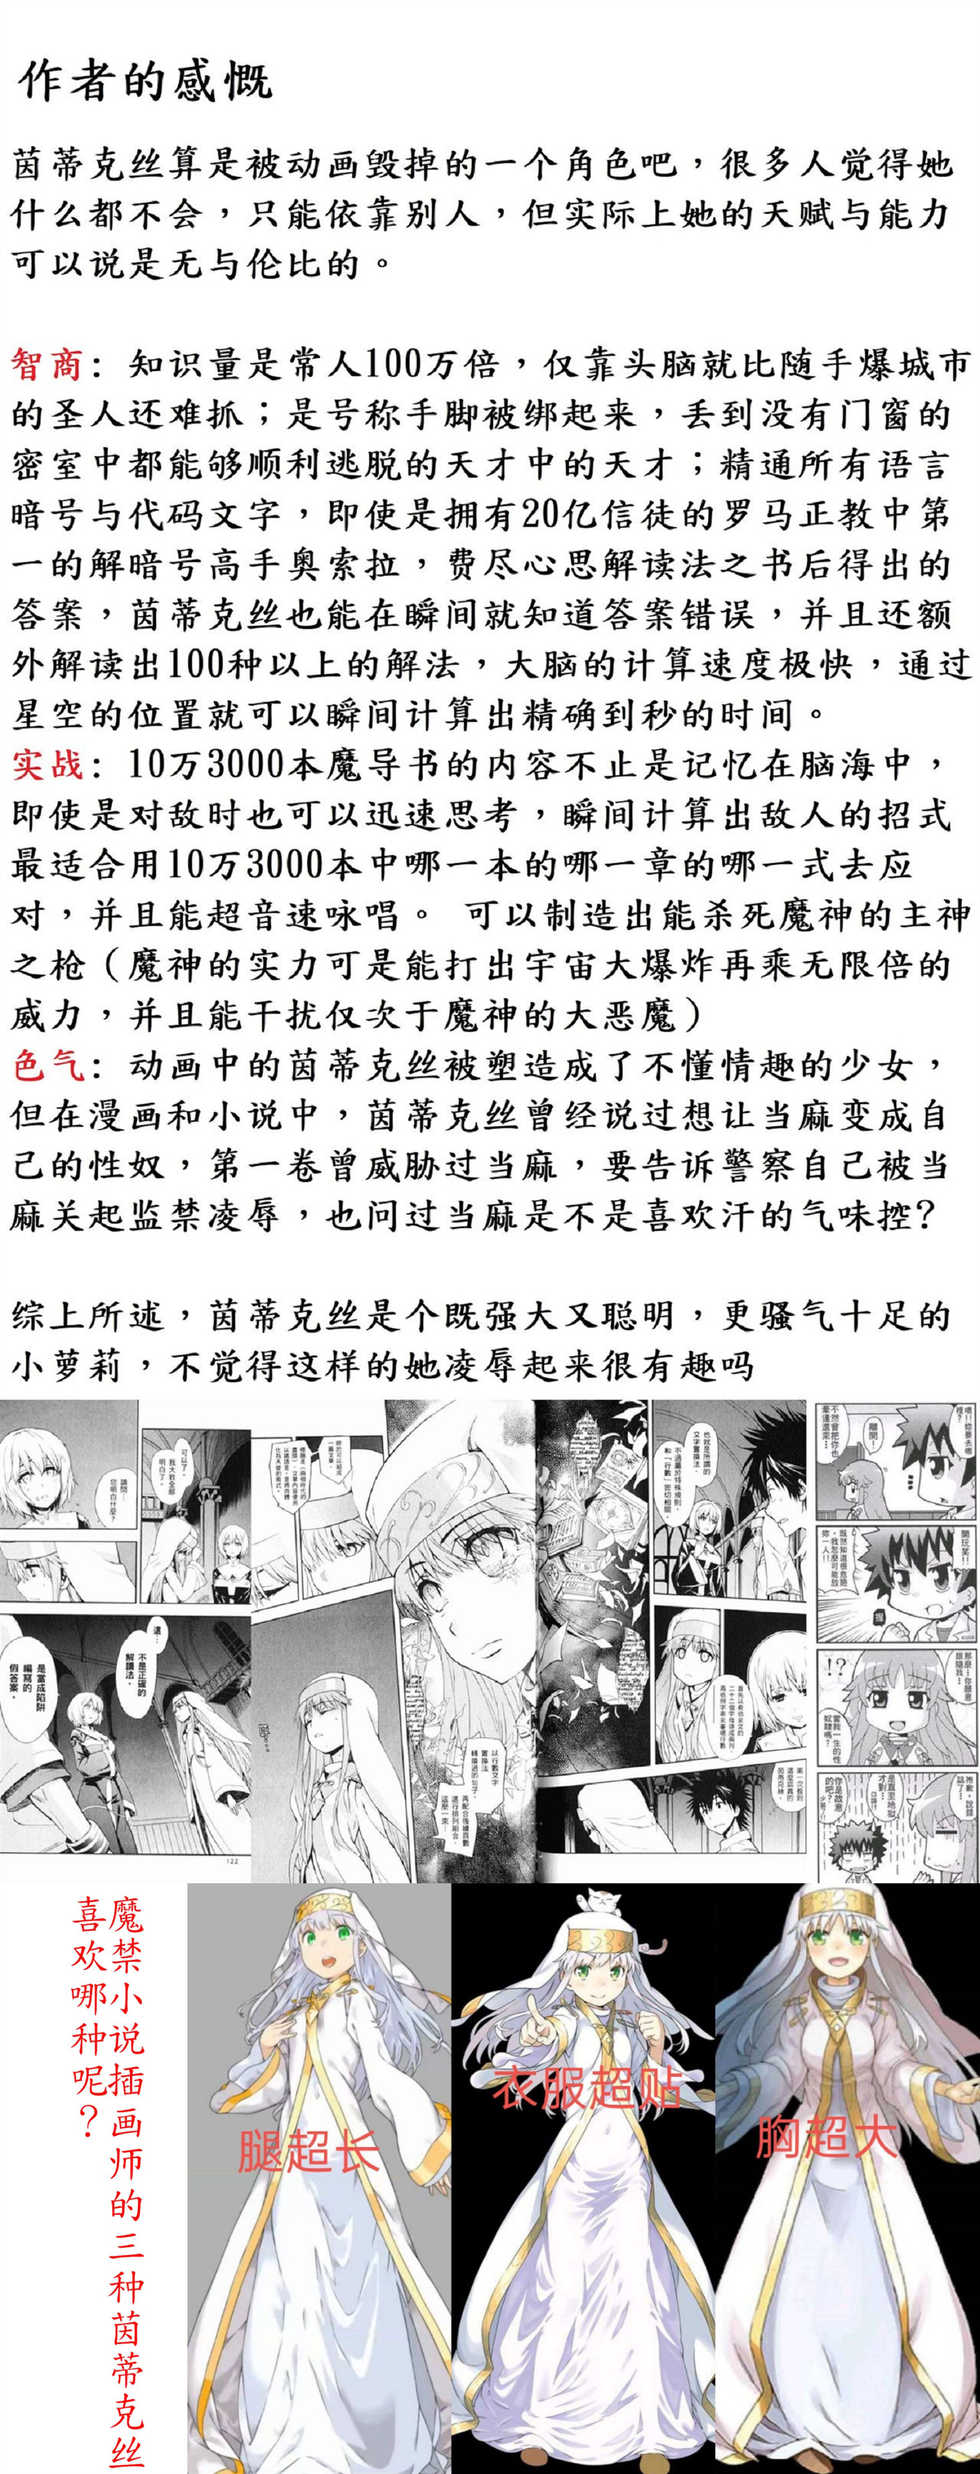 茵蒂克丝:谁先让我高潮我就嫁给谁(Toaru Majutsu no Index) [Chinese] - Page 13